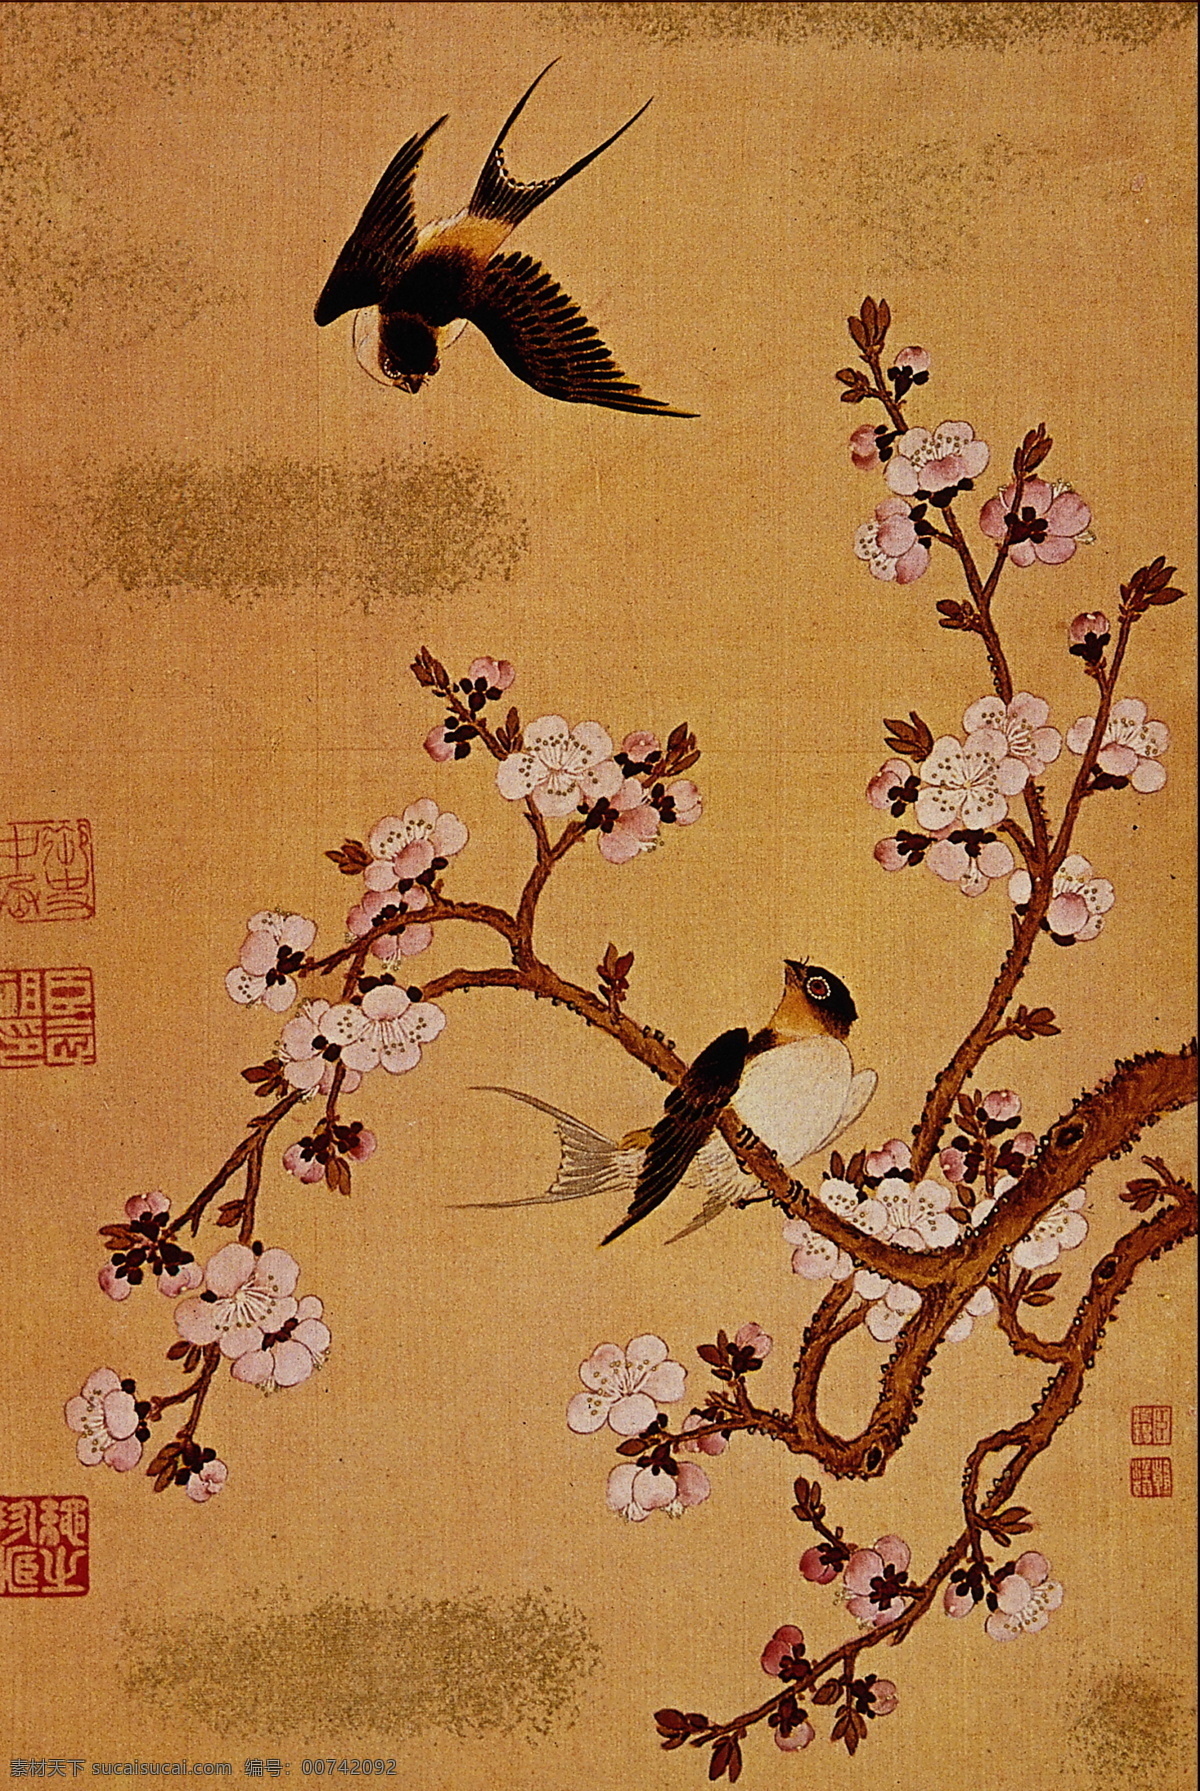 花鸟名画 中国 古 藏 中国古藏 设计素材 古典藏画 书画美术 棕色